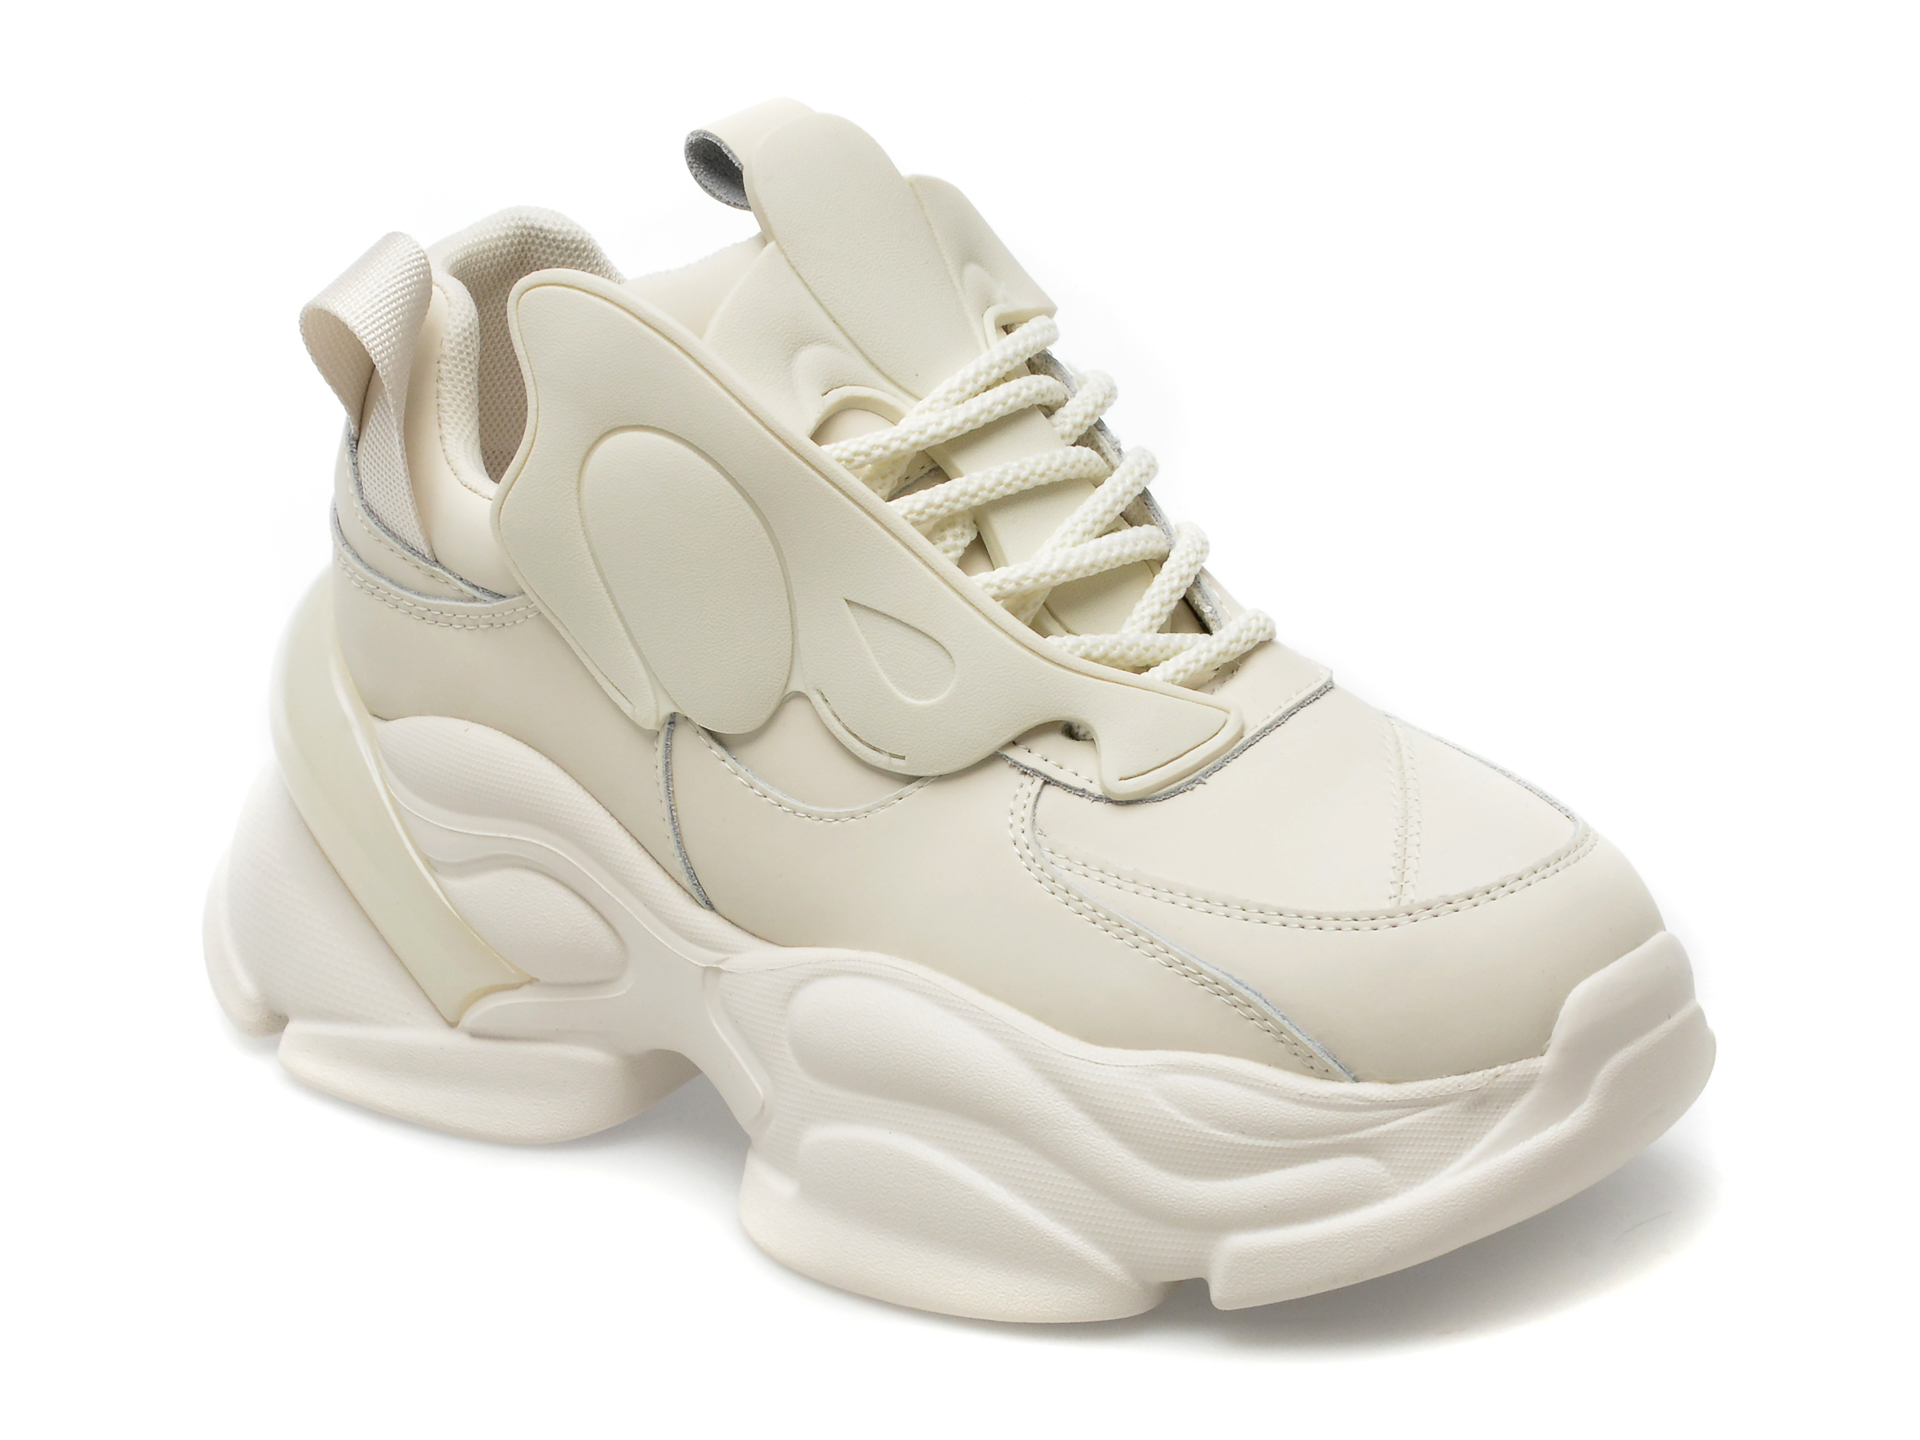 Pantofi EPICA albi, 893, din piele naturala femei 2023-03-21